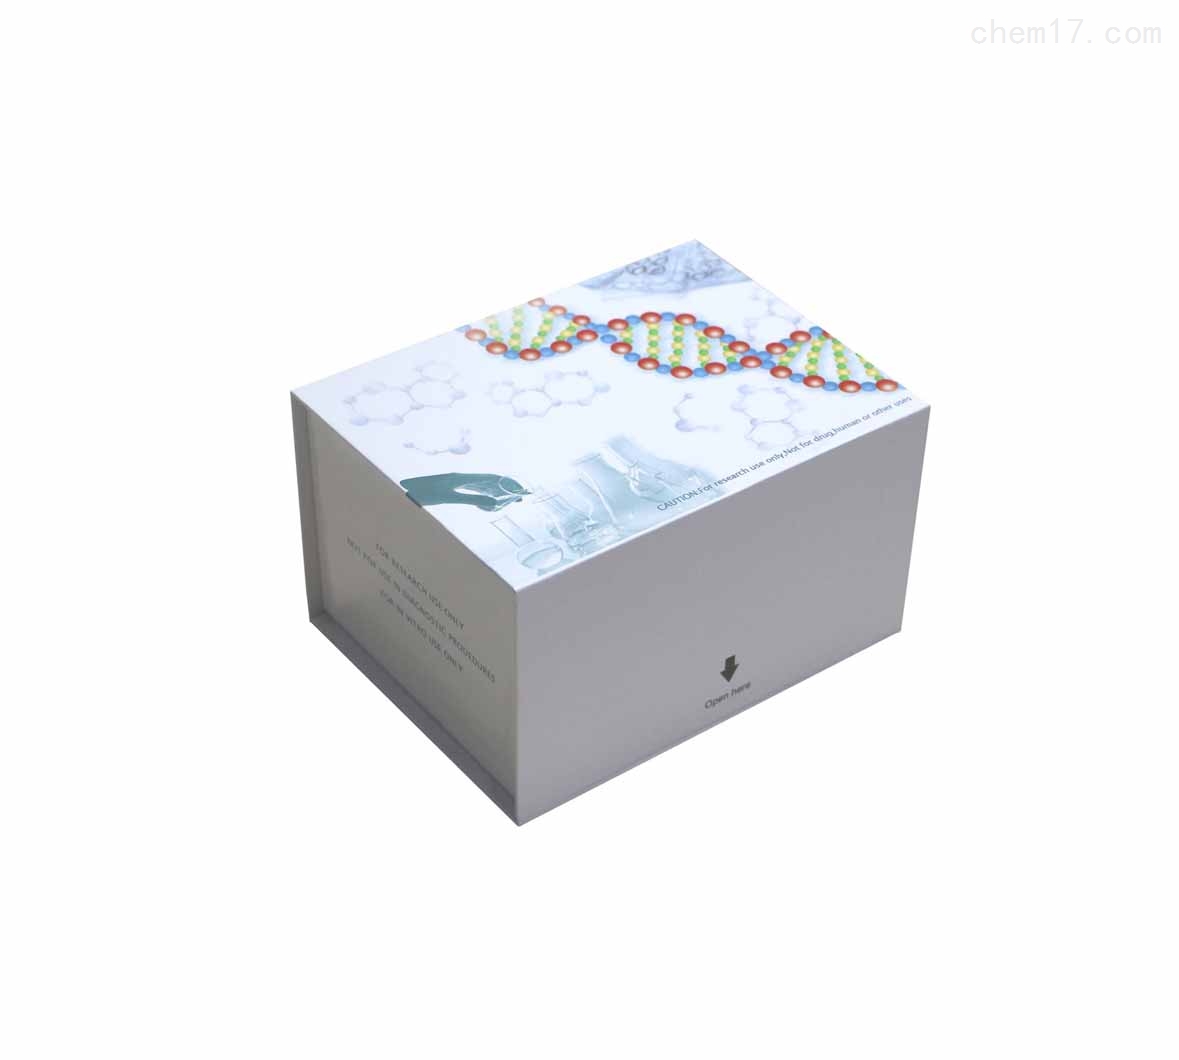 人胎儿血红蛋白(HBF)ELISA试剂盒